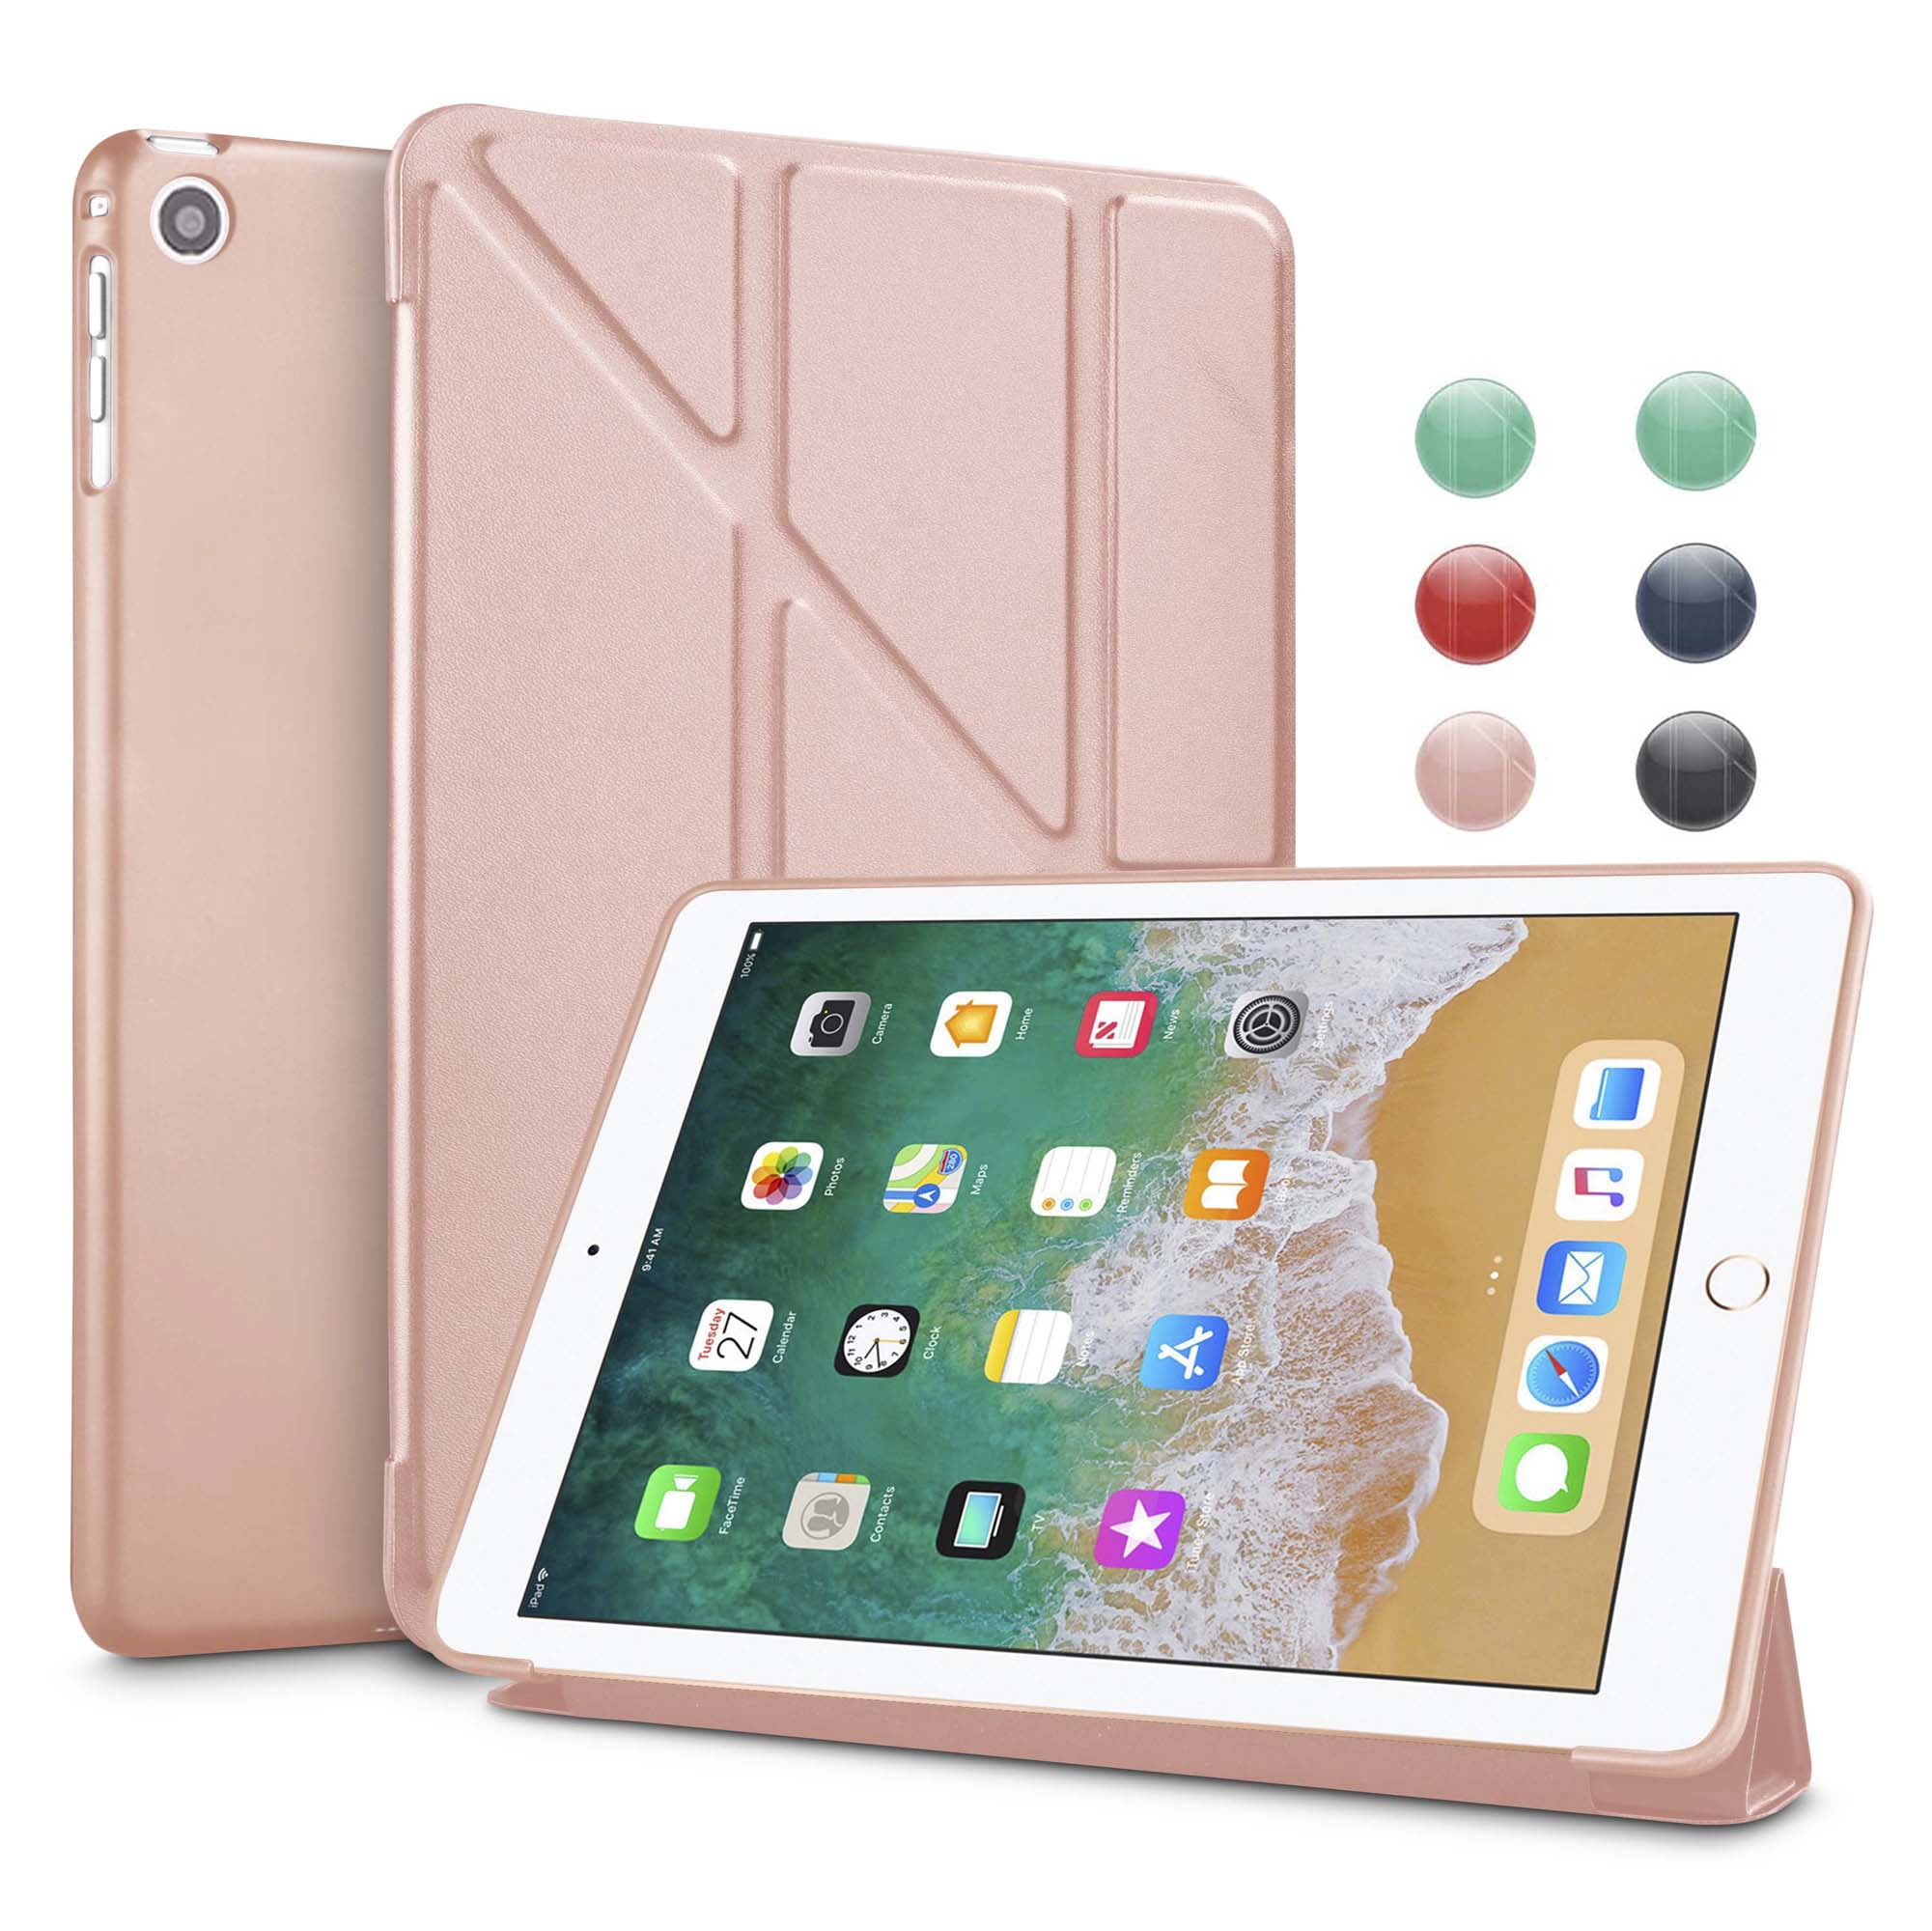 Njjex Cases Apple iPad Mini / iPad Mini 2 / iPad Mini 3, Slim Fit